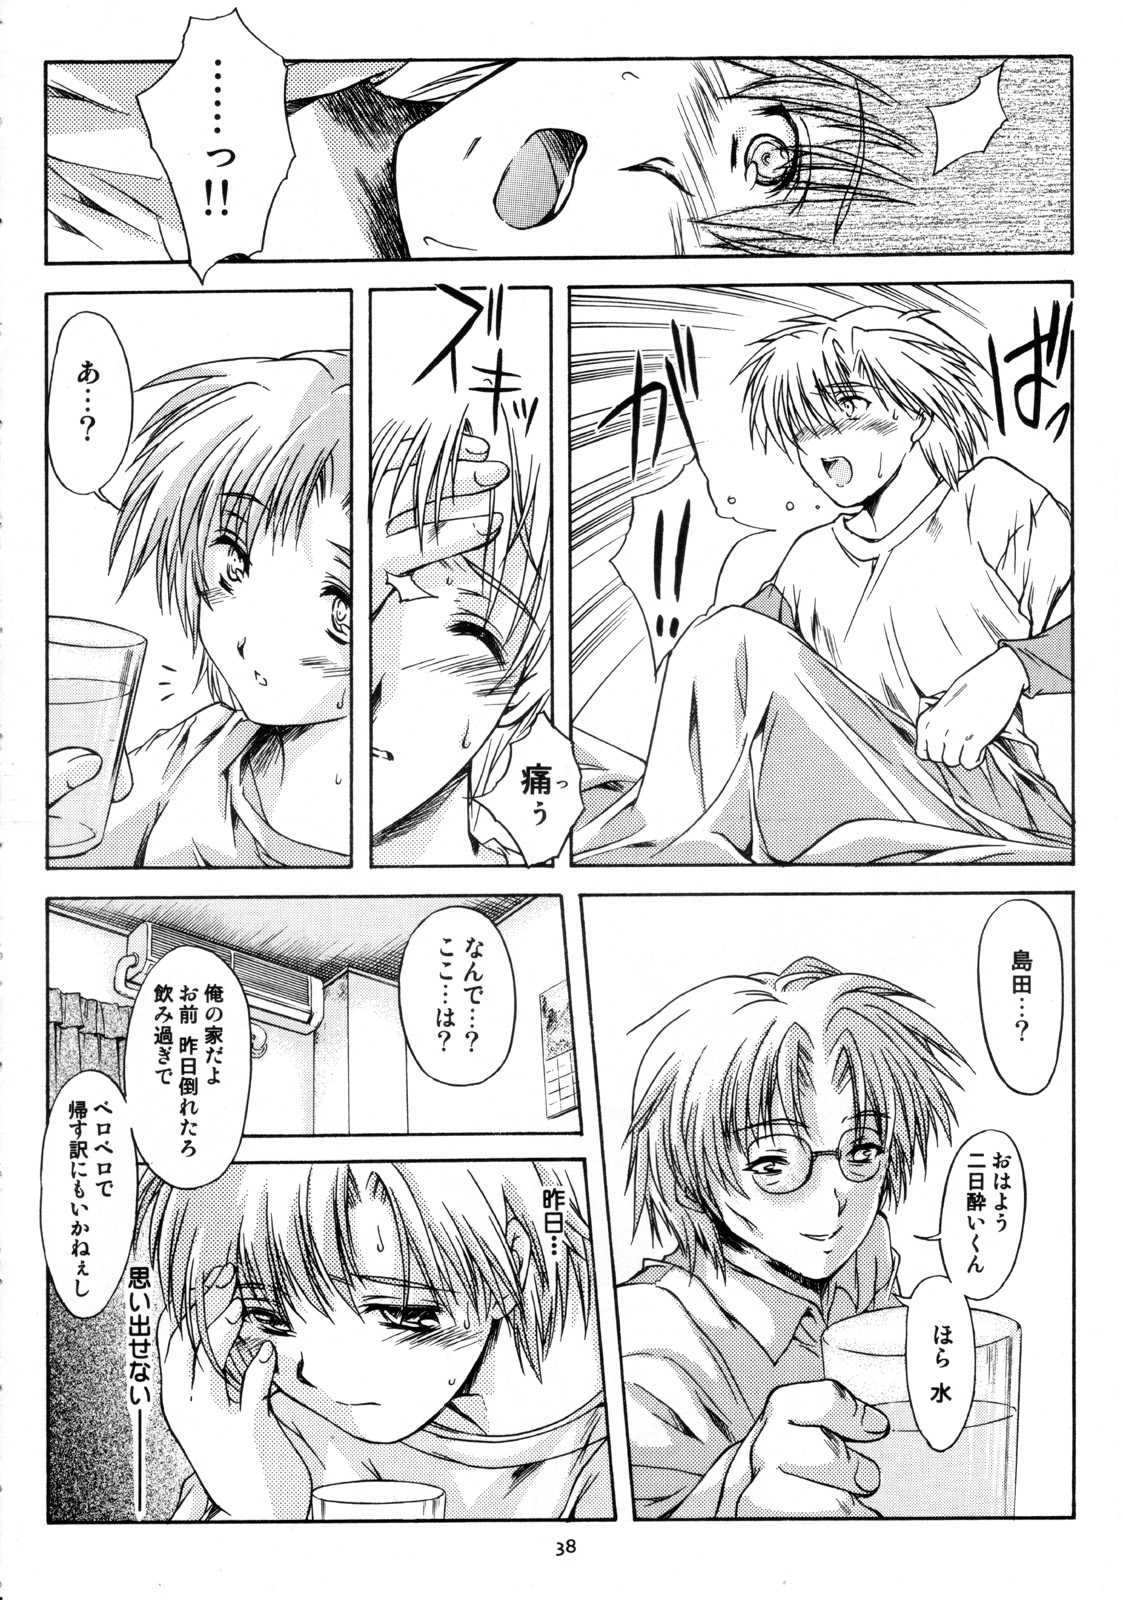 [HIGH RISK REVOLUTION] Shiori Vol.12 Haitoku no Cinderella (Tokimeki Memorial) page 39 full